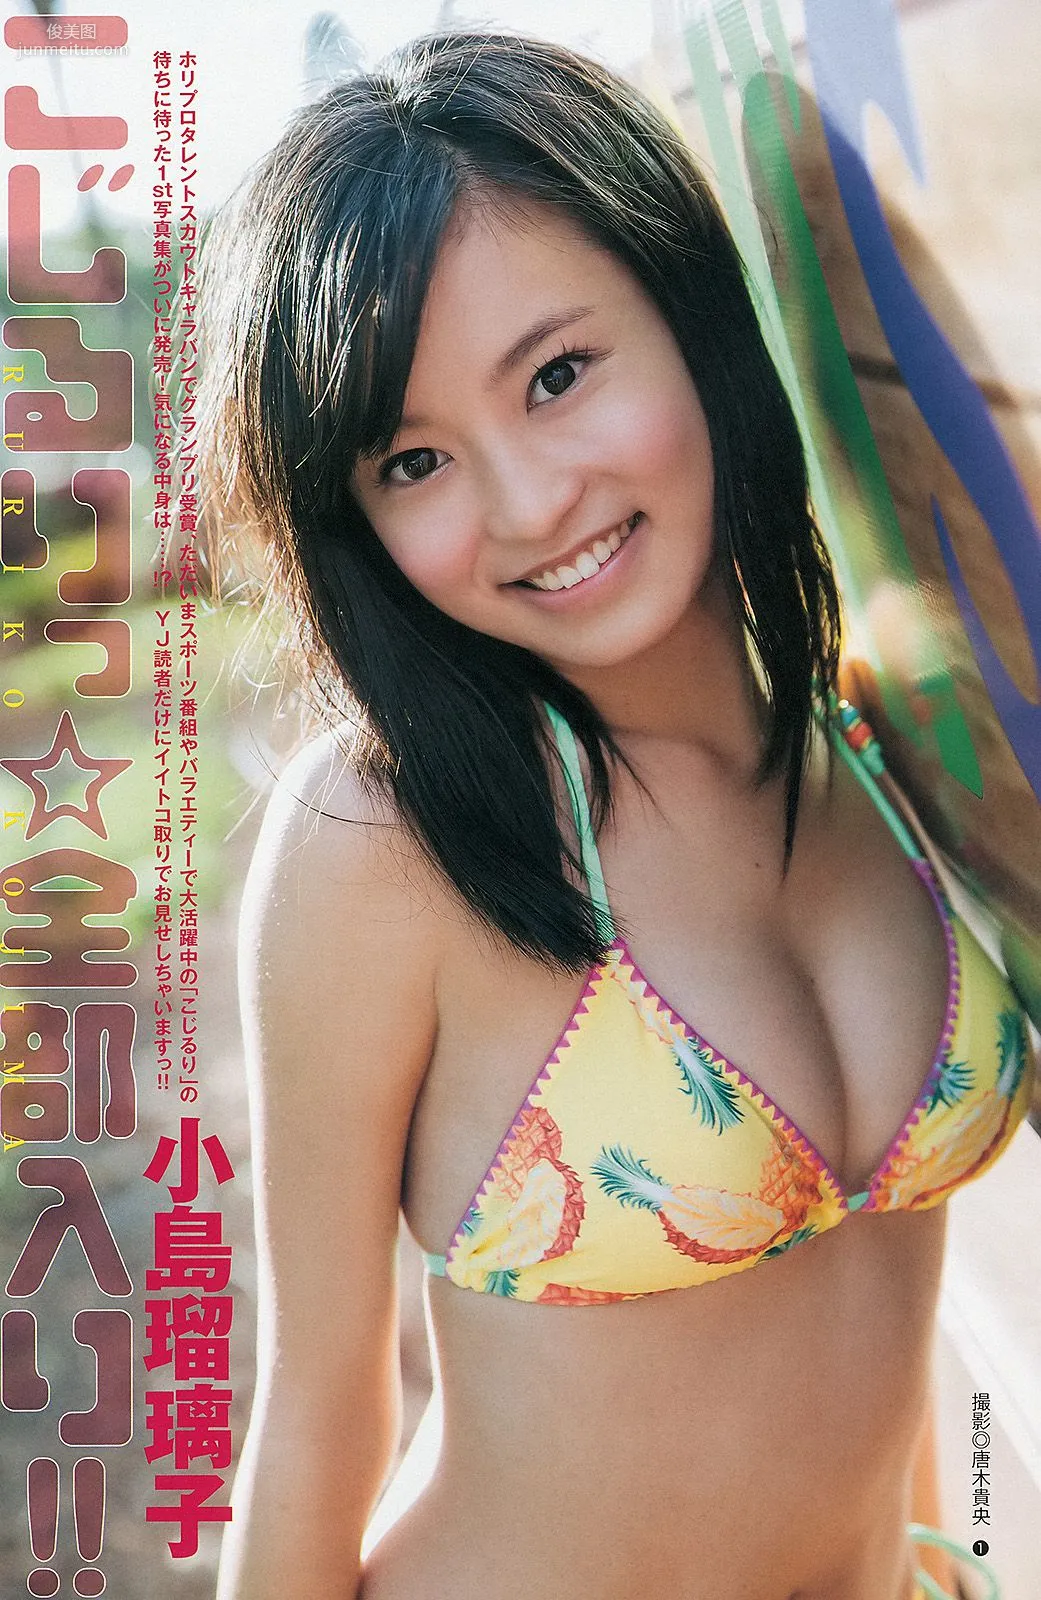 鈴木愛理 小島瑠璃子 ベイビーレイズ [週刊ヤングジャンプ] 2013年No.33 写真杂志9